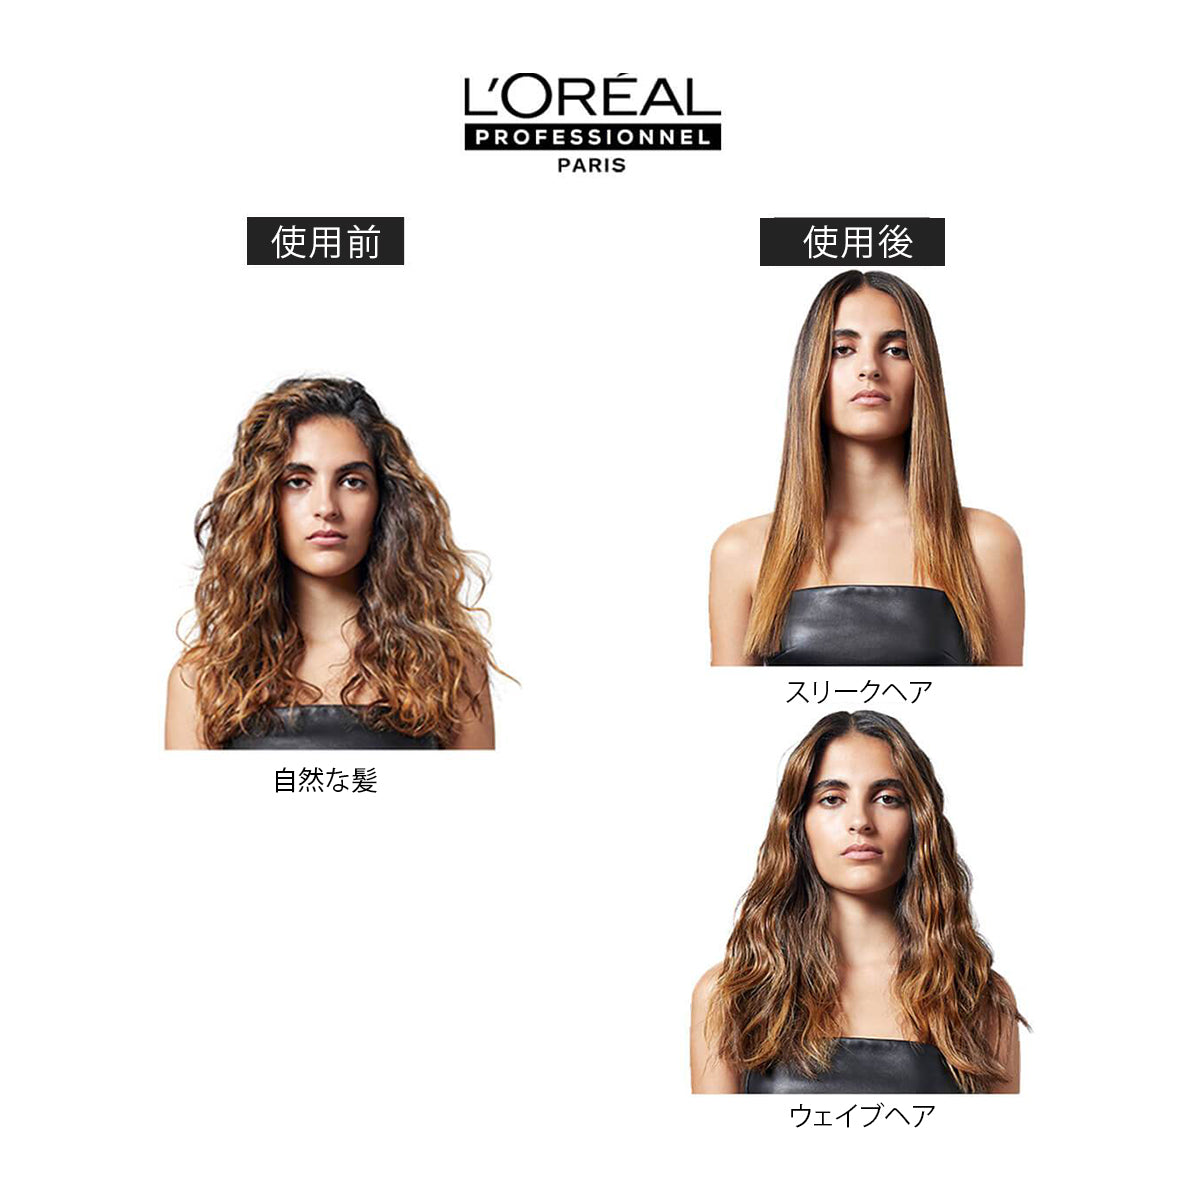 L'Oréal Professionnel ロレアルパリ スチームポッド 3.0